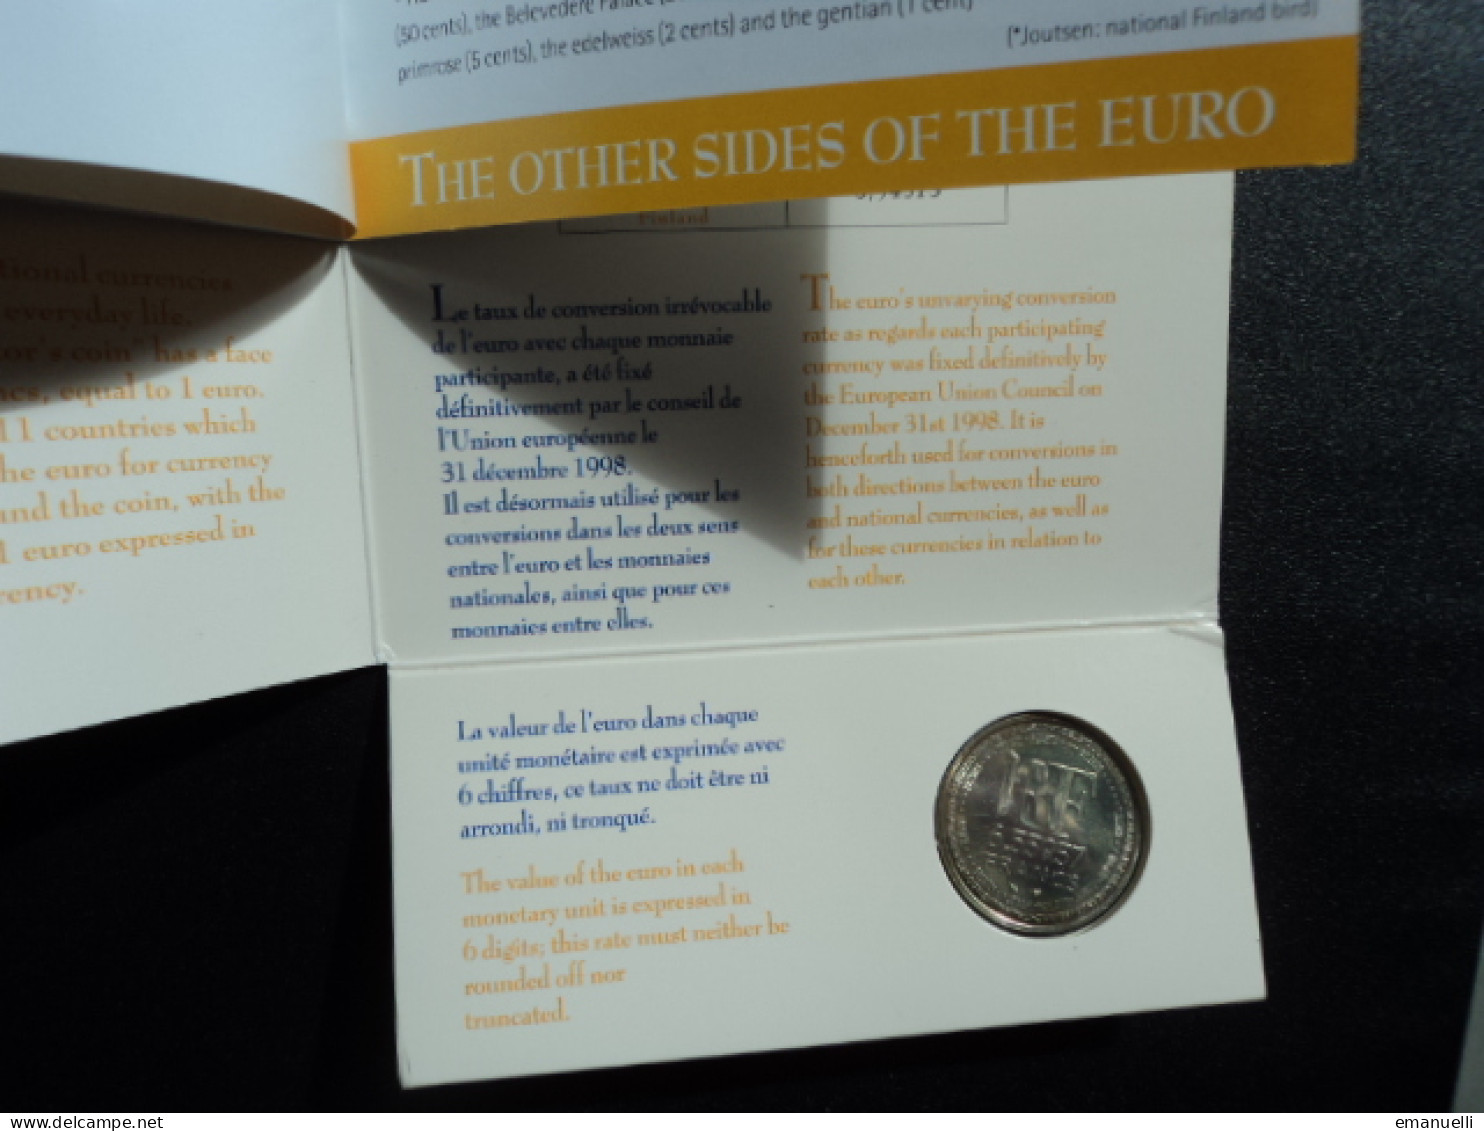 EUROPA : La pièce symbole de la parité de l'euro  *